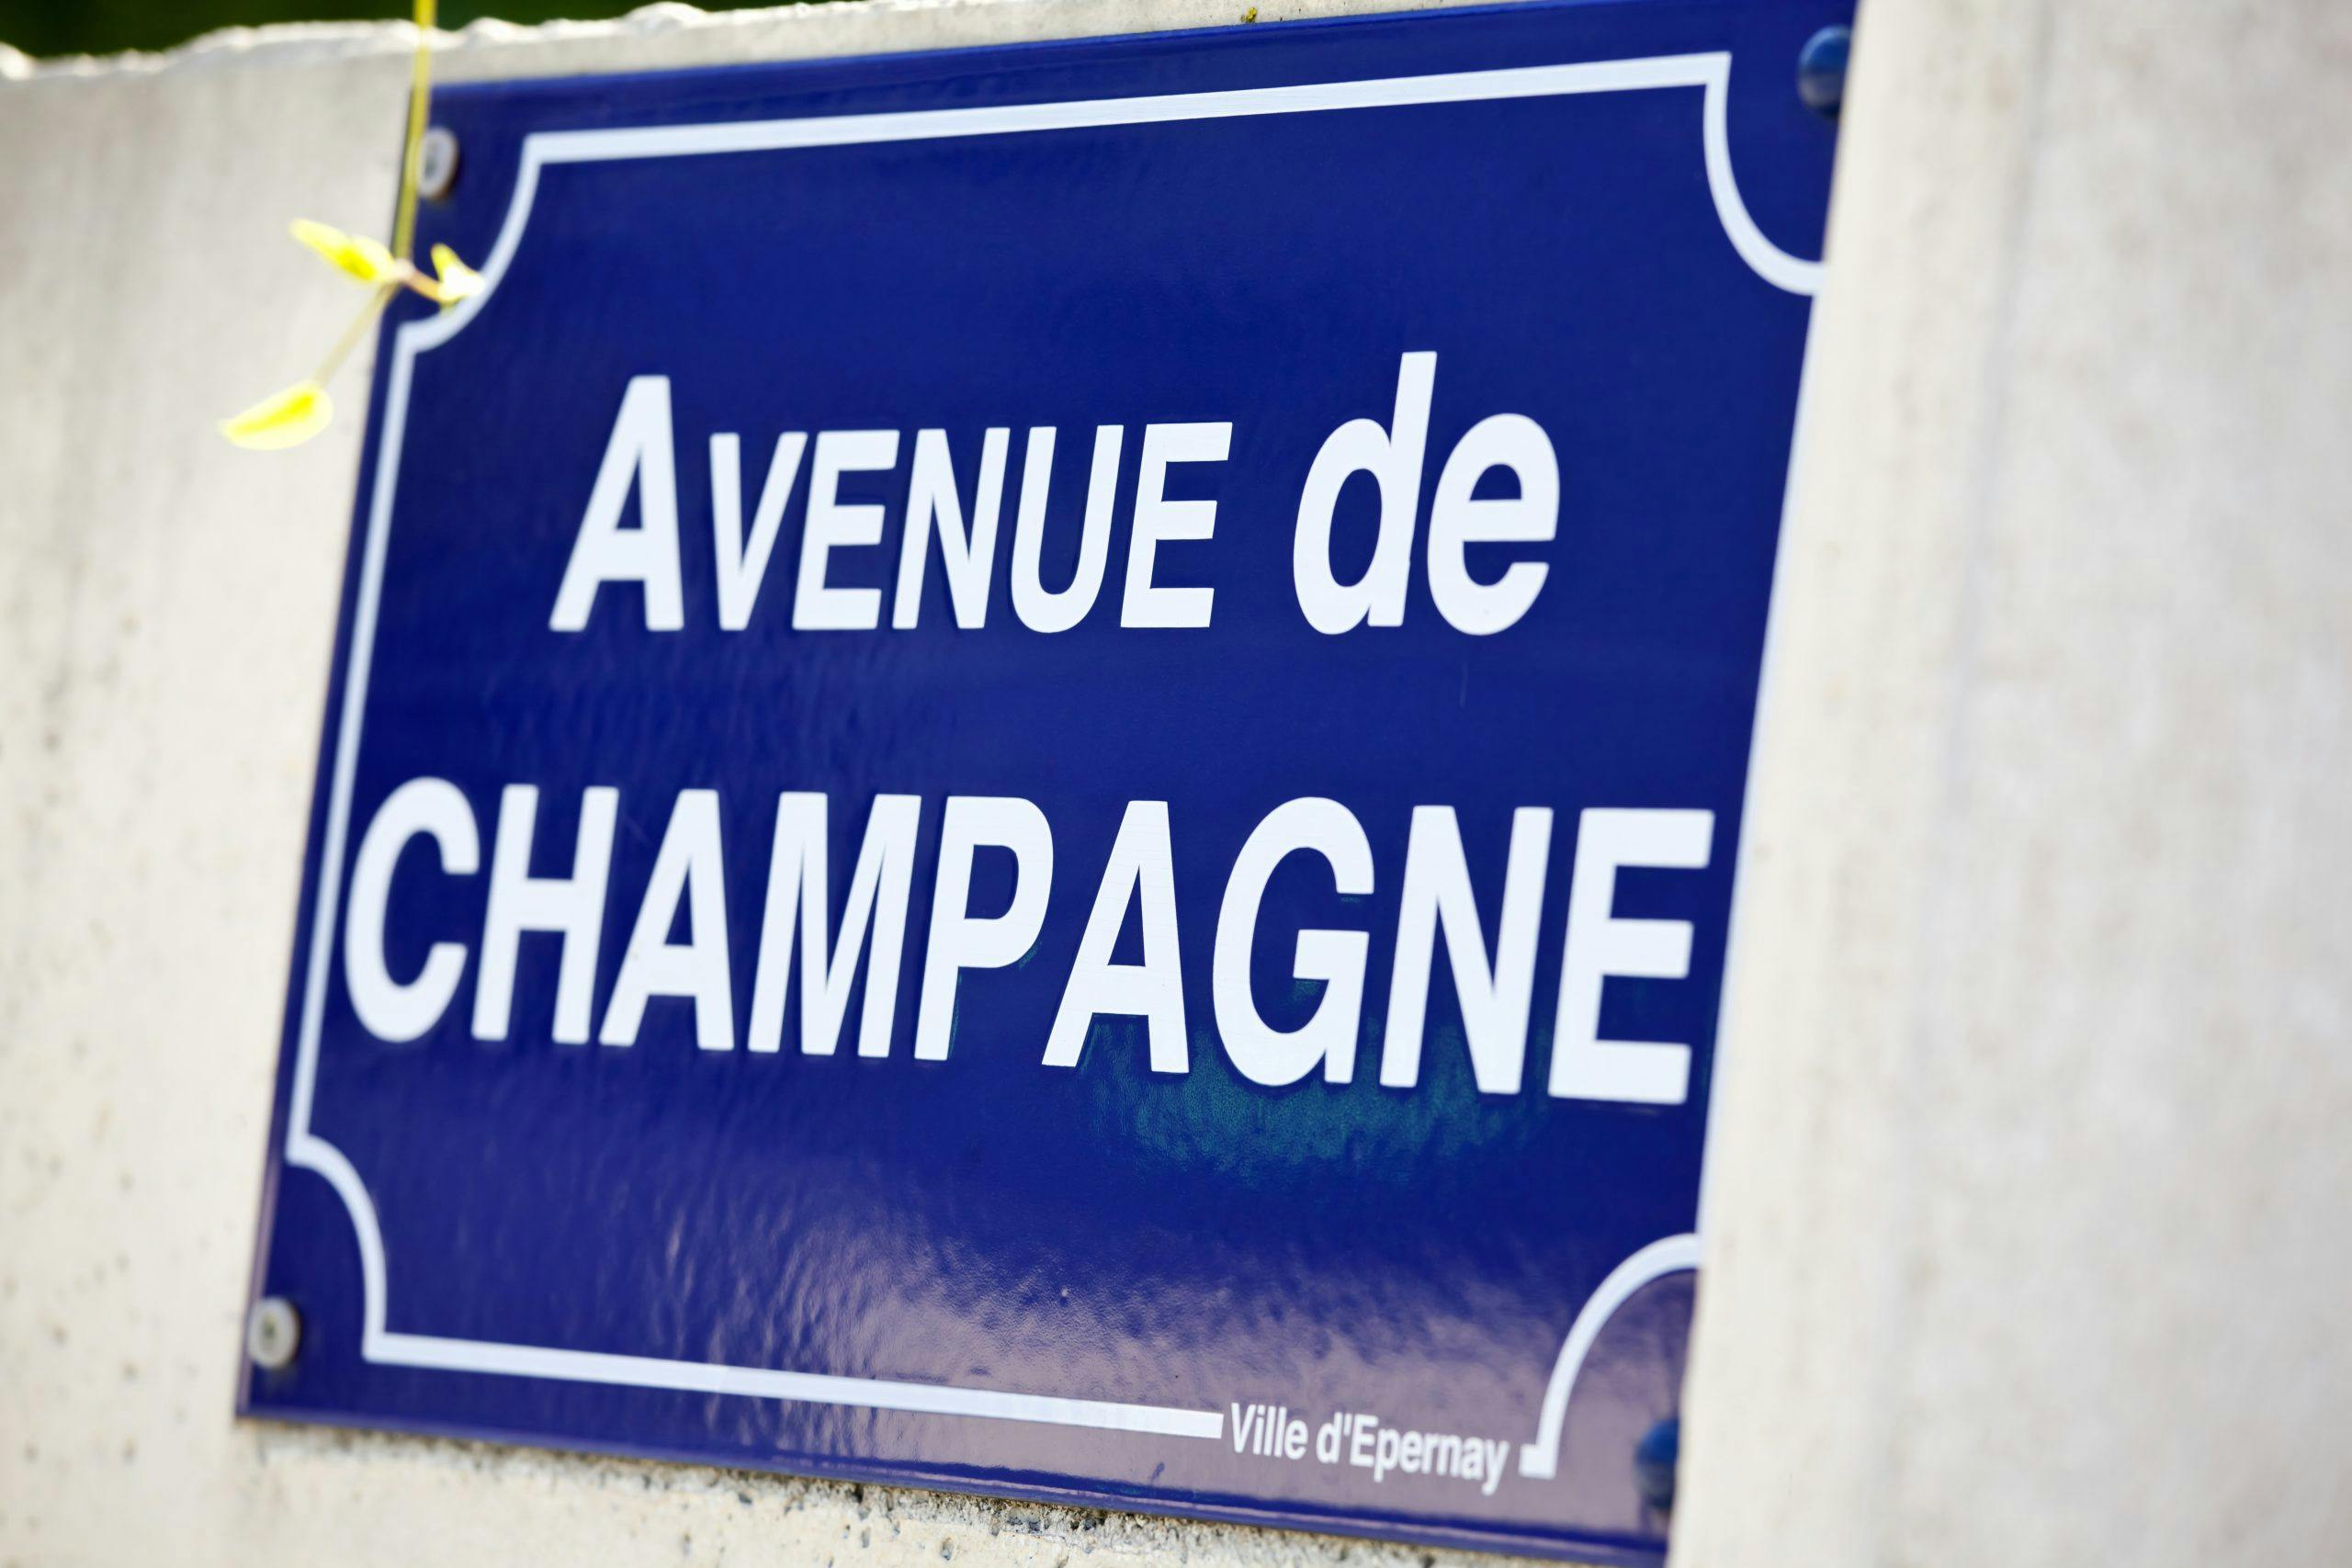 Avenue de Champagne Sveriges champagnemässa. Fredrik Schelin välkomnar till Sveriges största champagnemässa på Sthlm Food & Wine